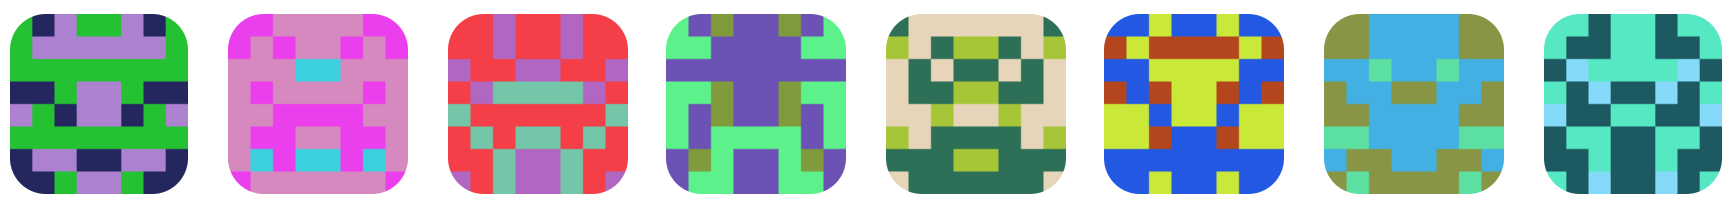 Sample of generated blockies